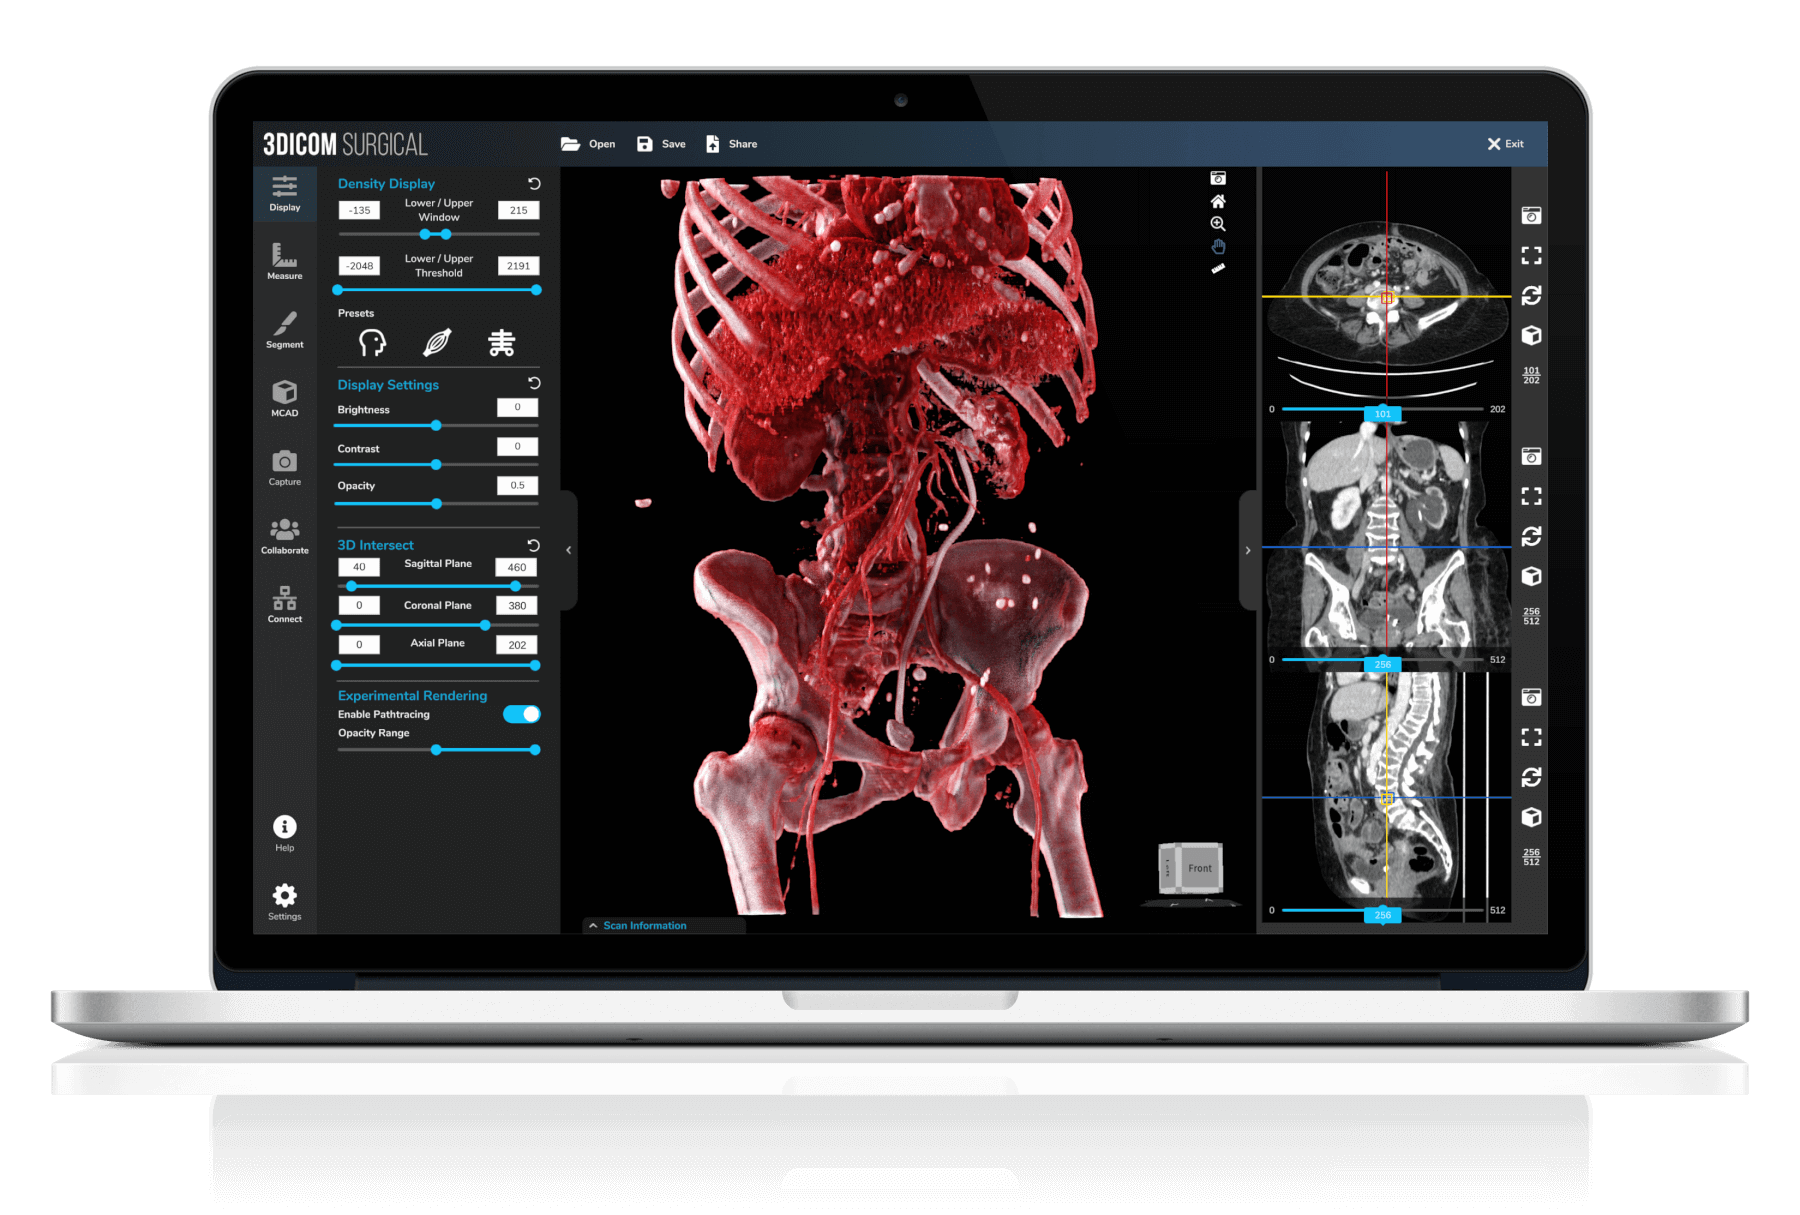 Gambar Fitur Perangkat Lunak 3Dicom Viewer - MacBook Pro dengan 3Dicom Surgical menampilkan gambar dada berwarna